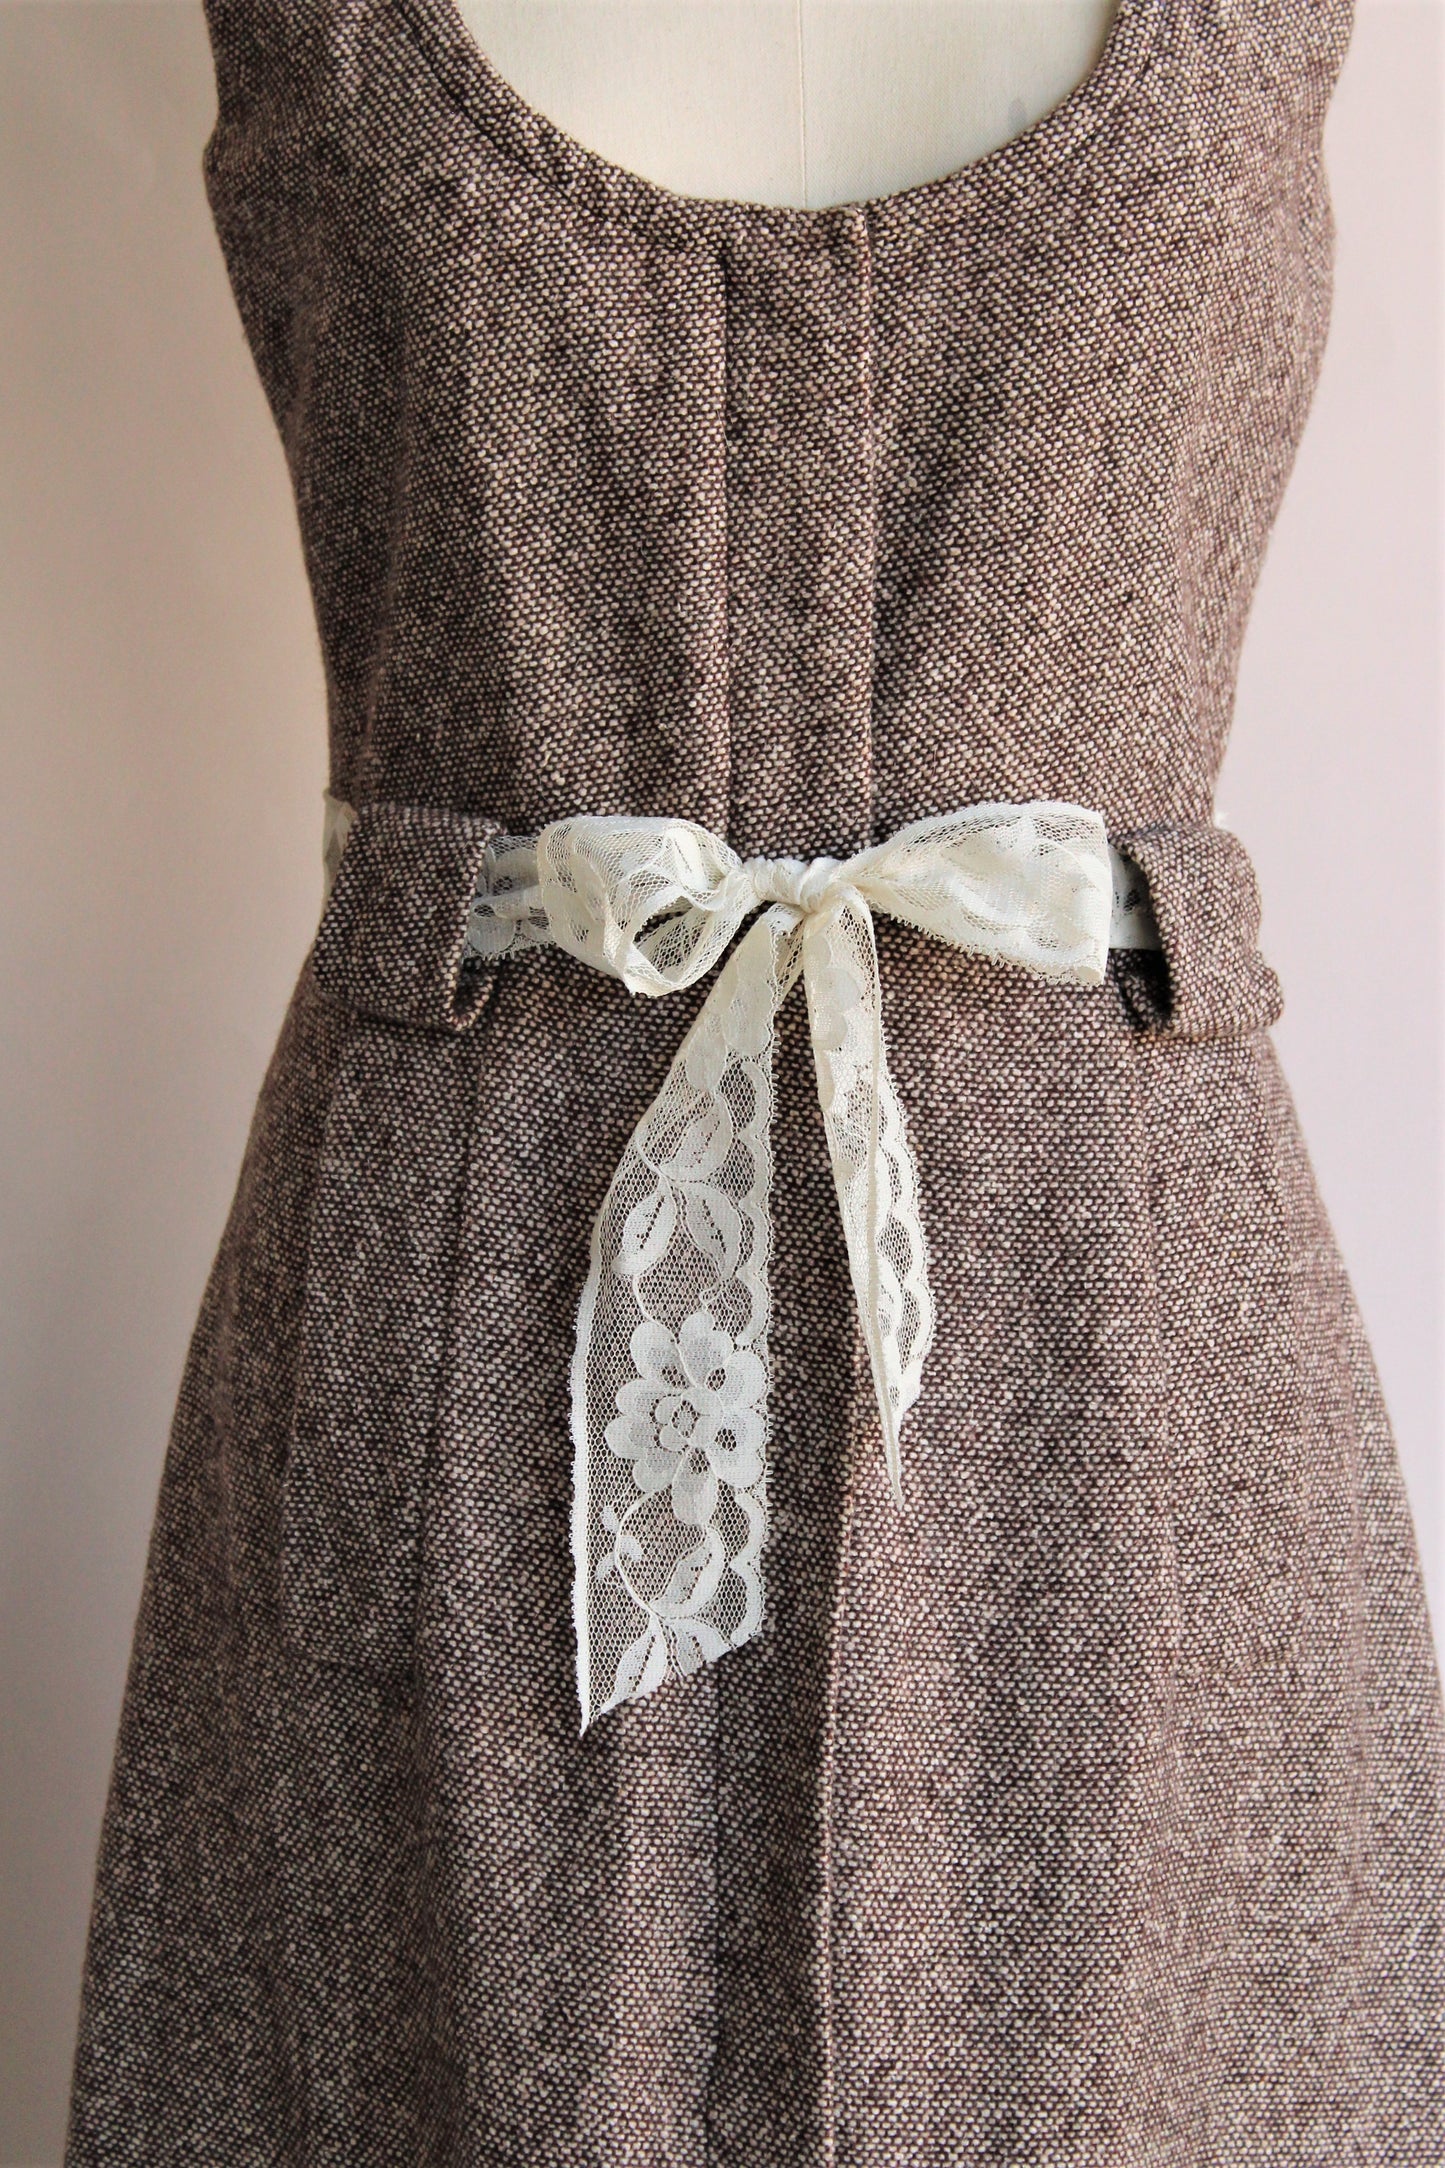 Vintage Late 1960s Brown Tweed Dress